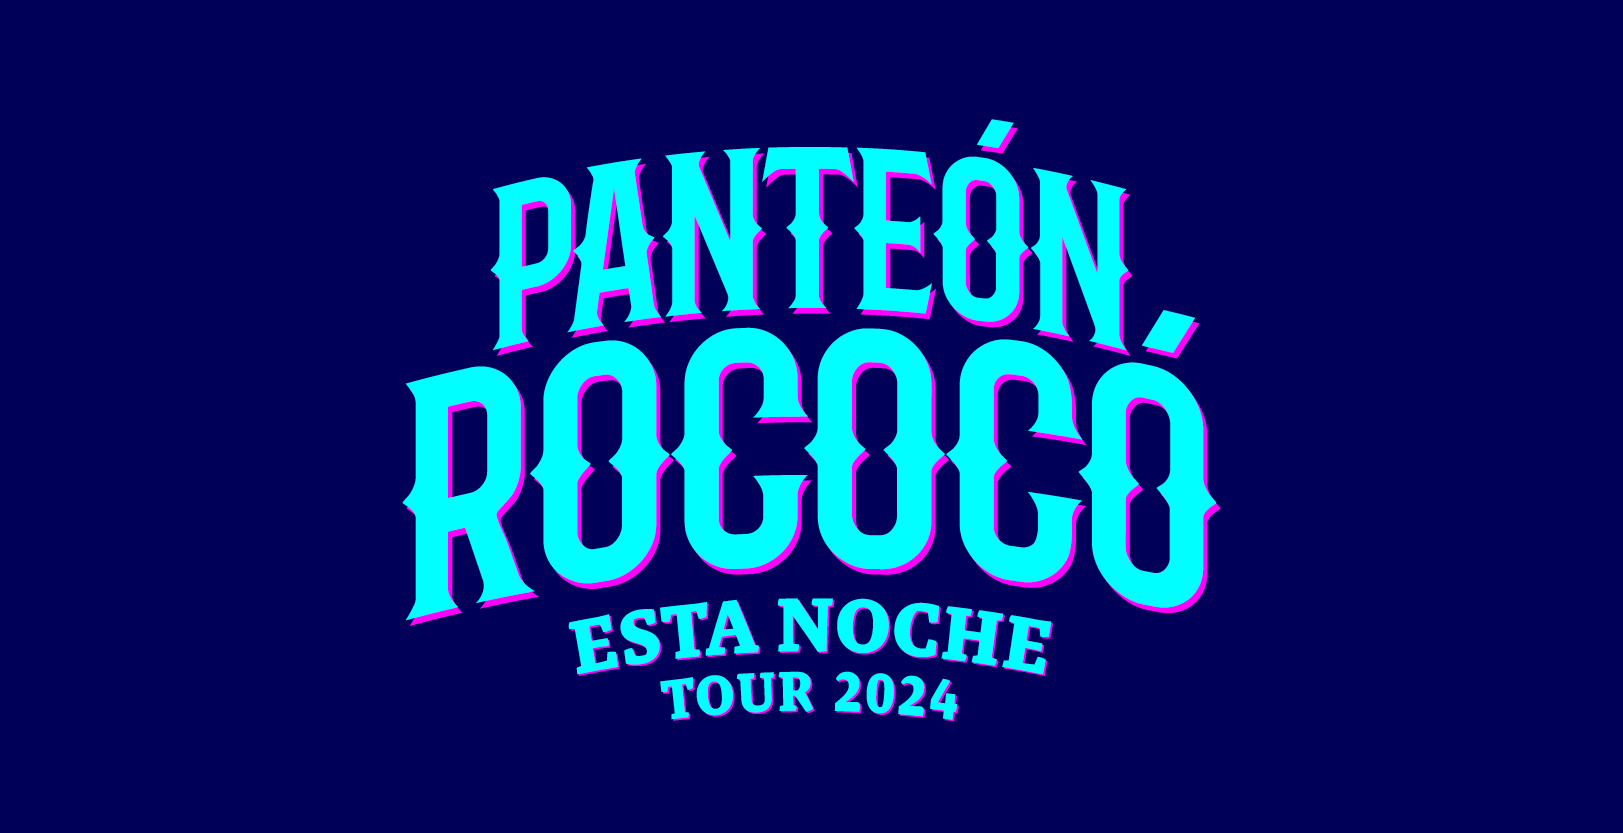 Panteon Rococo Tickets